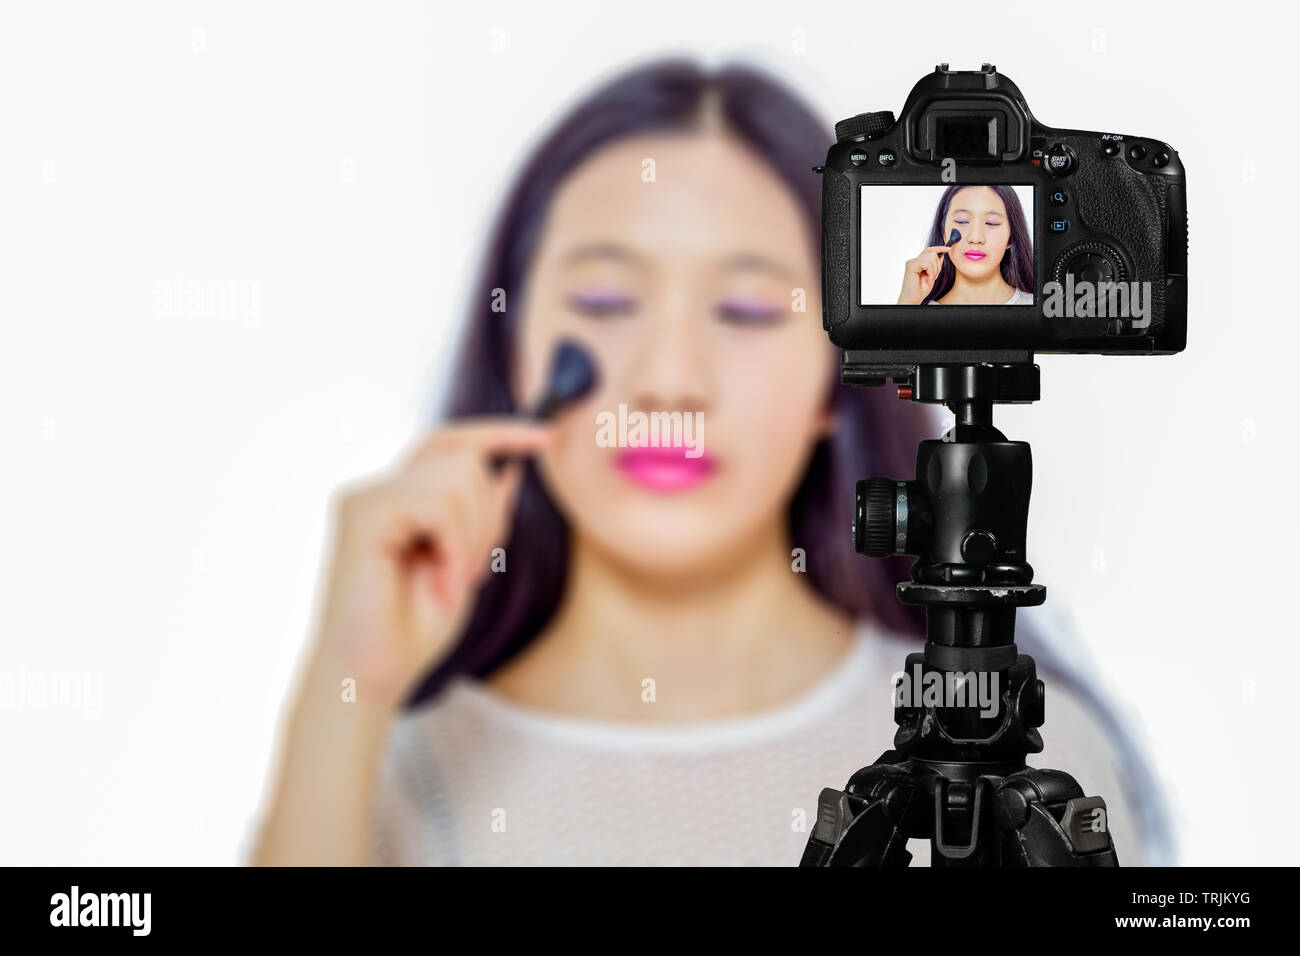 Fokus auf live view auf Kamera auf Stativ, junges Mädchen mit Kosmetik Bild zurück Bild mit unscharfen Szene im Hintergrund. Teenage vlogger livestrea Stockfoto